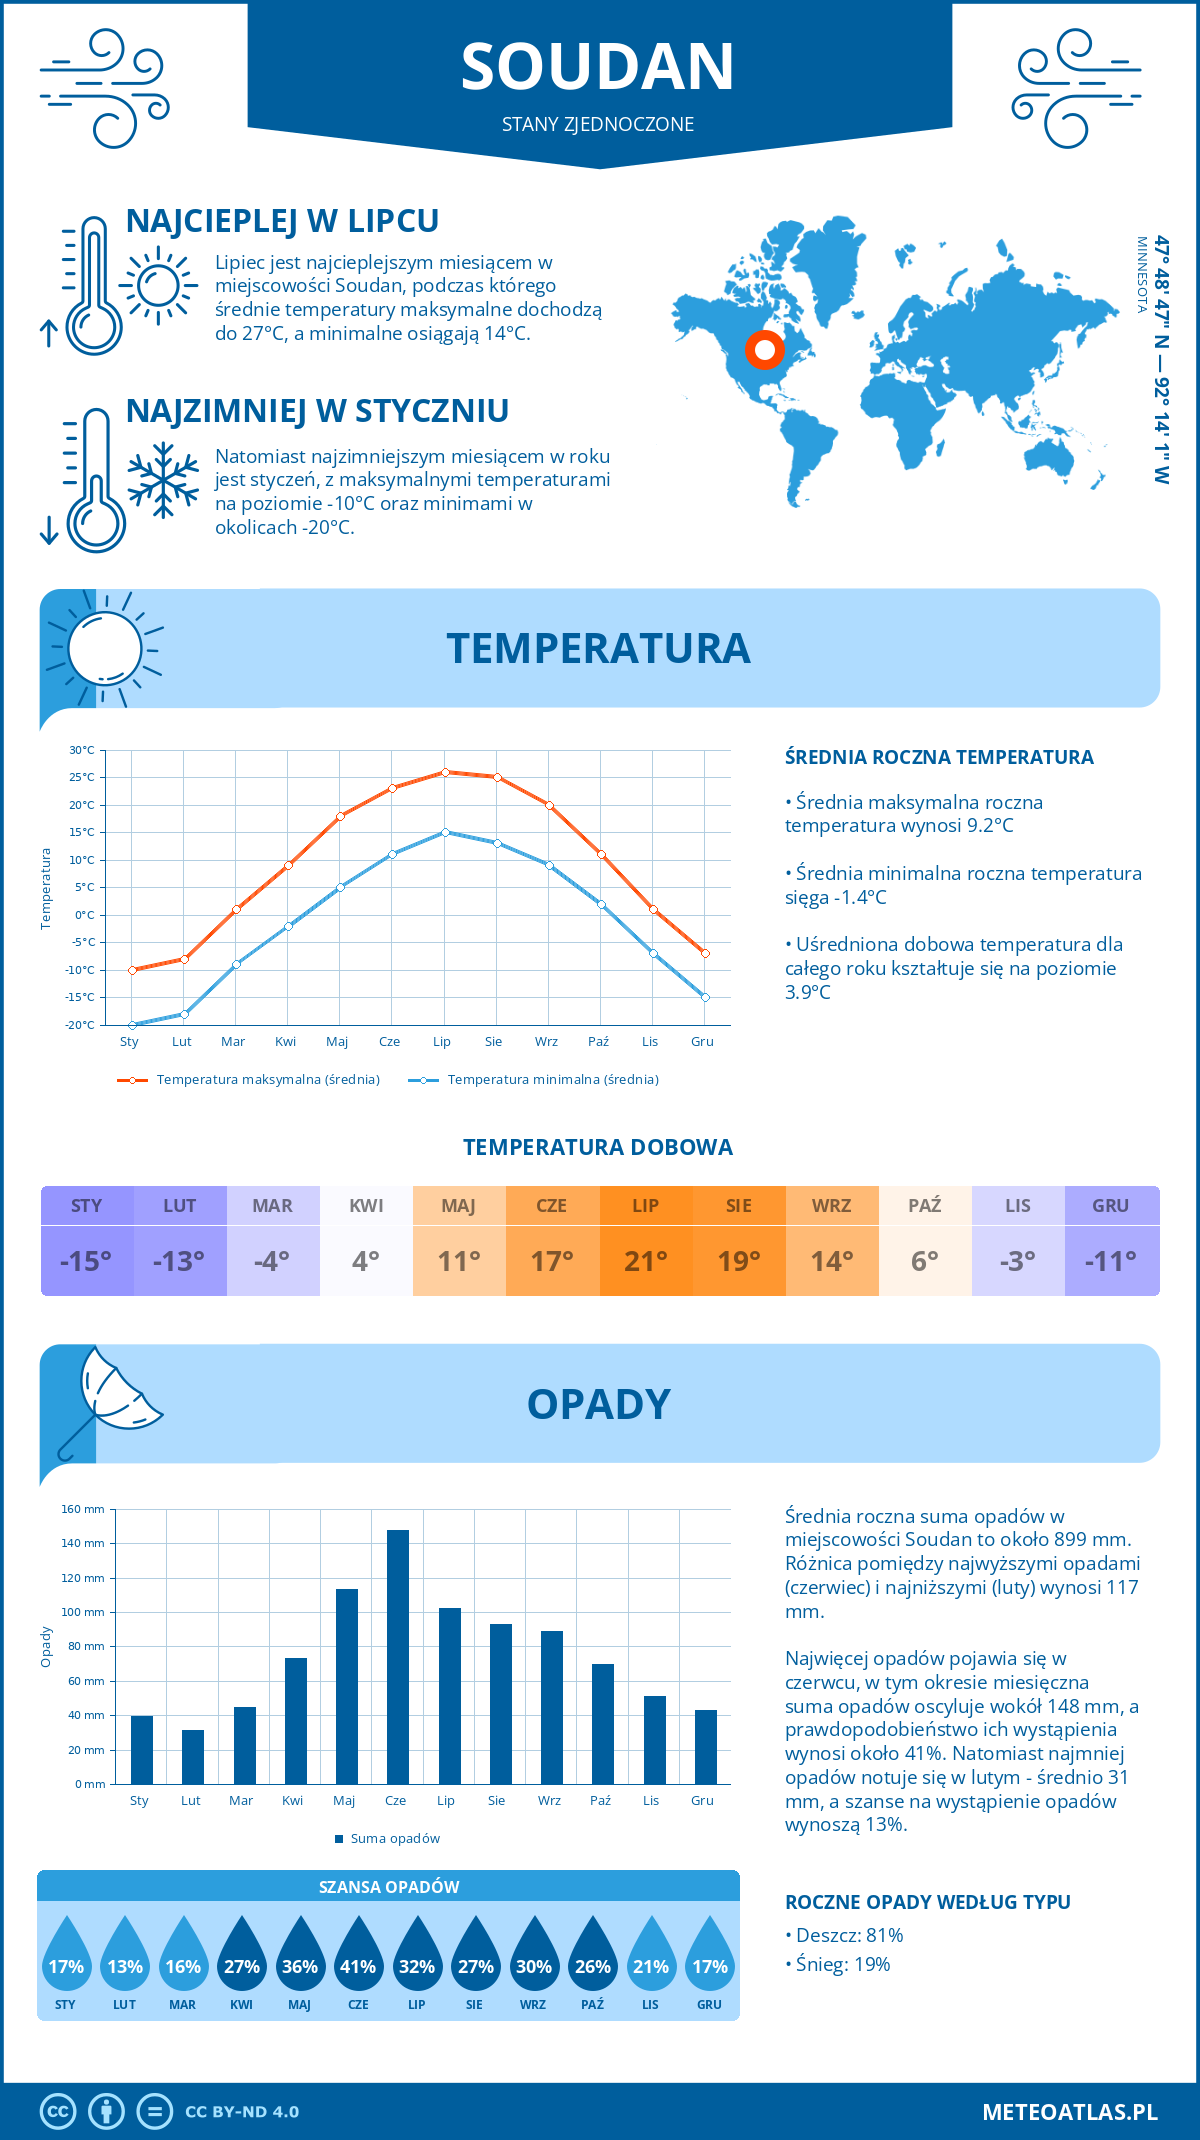 Pogoda Soudan (Stany Zjednoczone). Temperatura oraz opady.